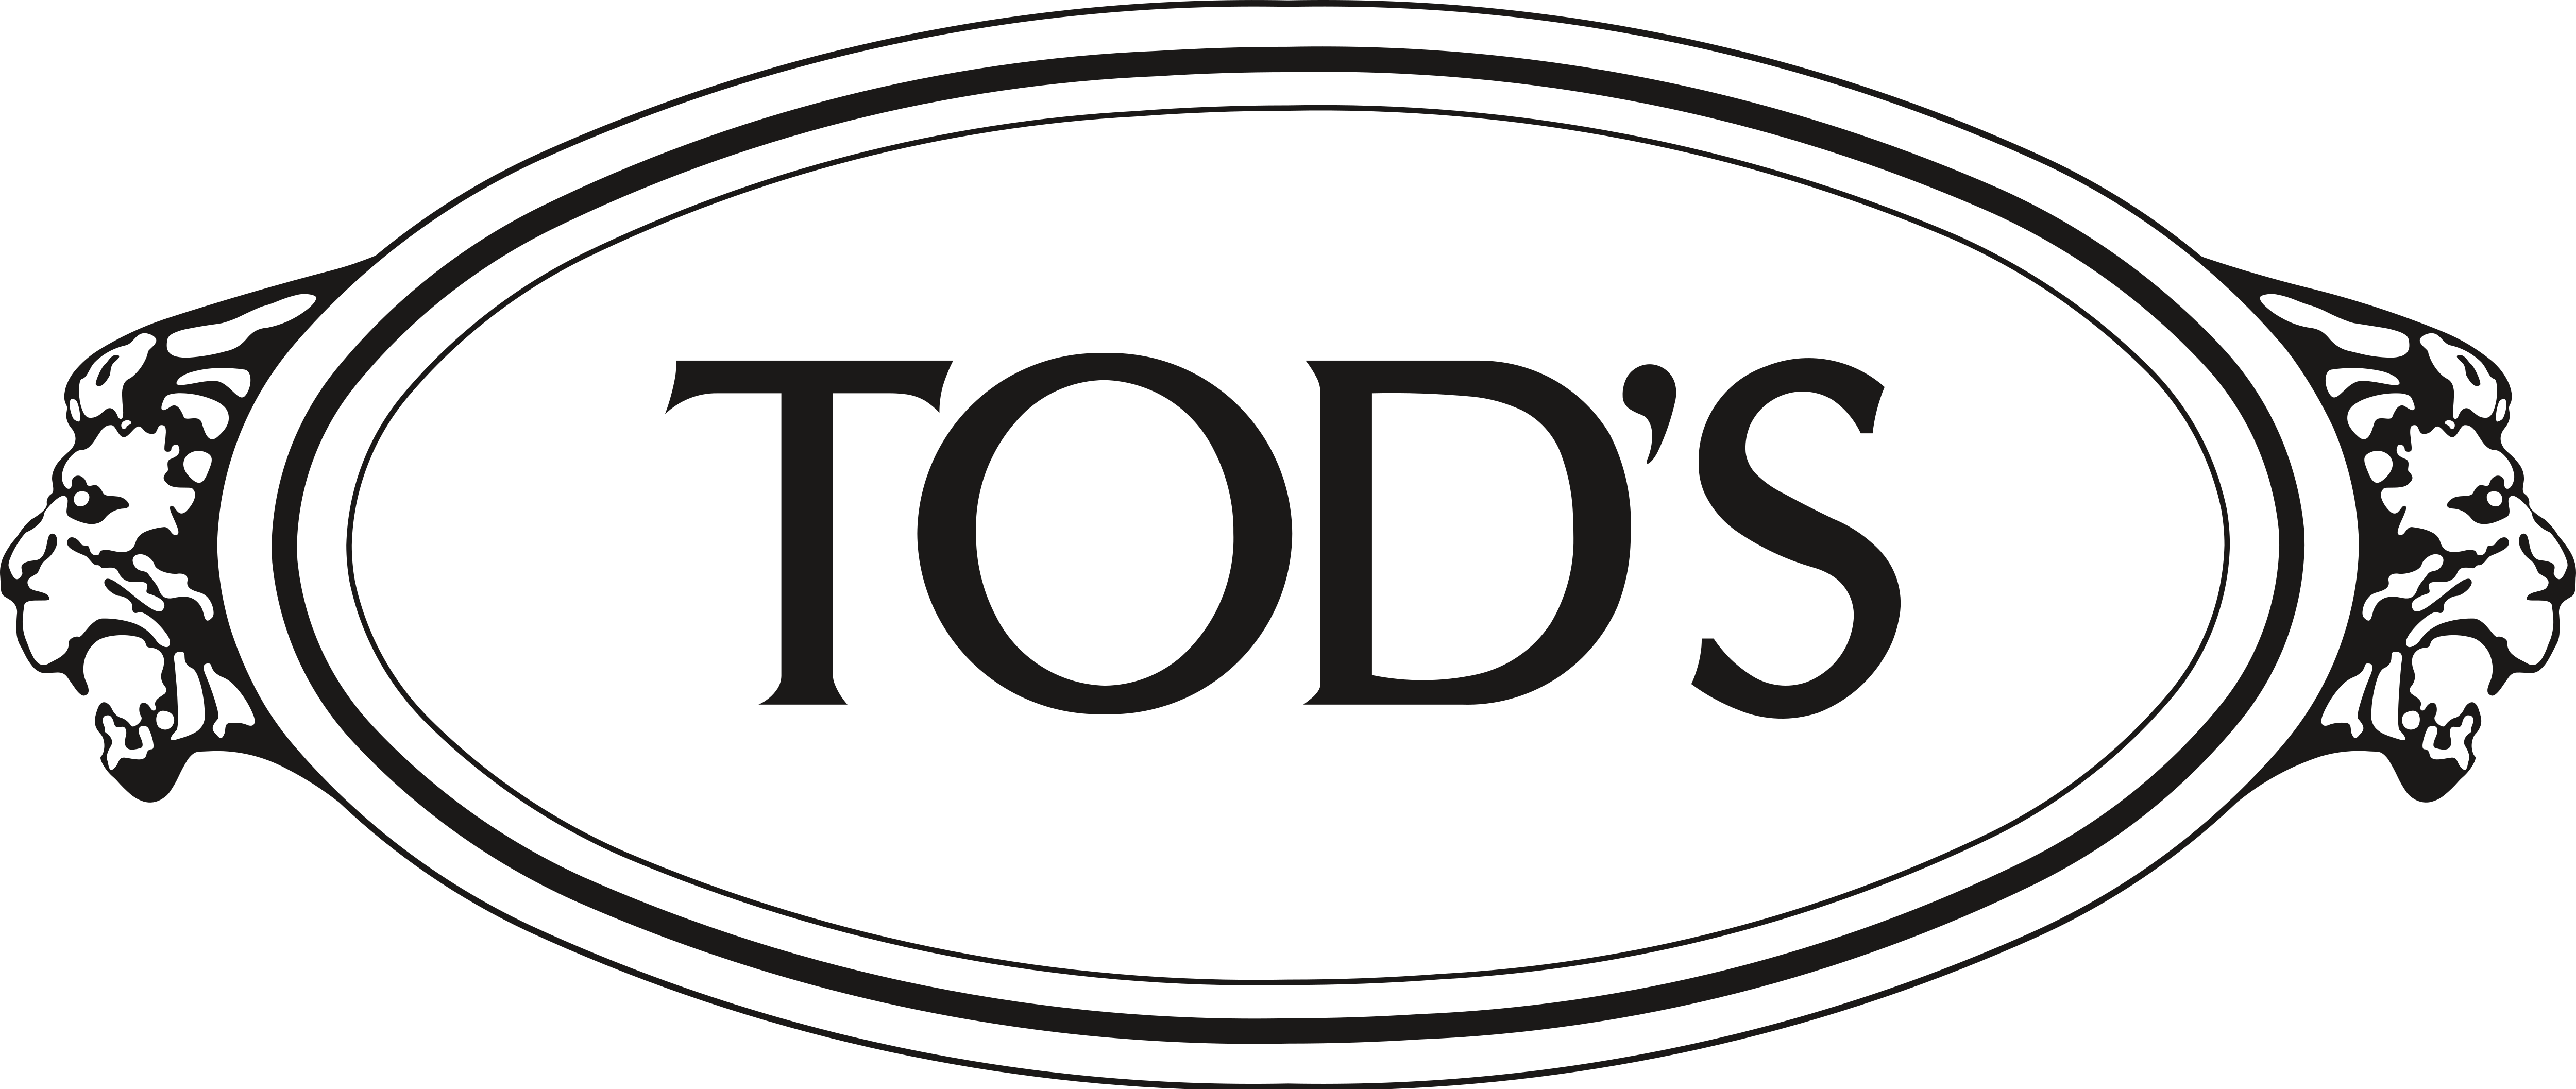 Tod’s – Logos Download